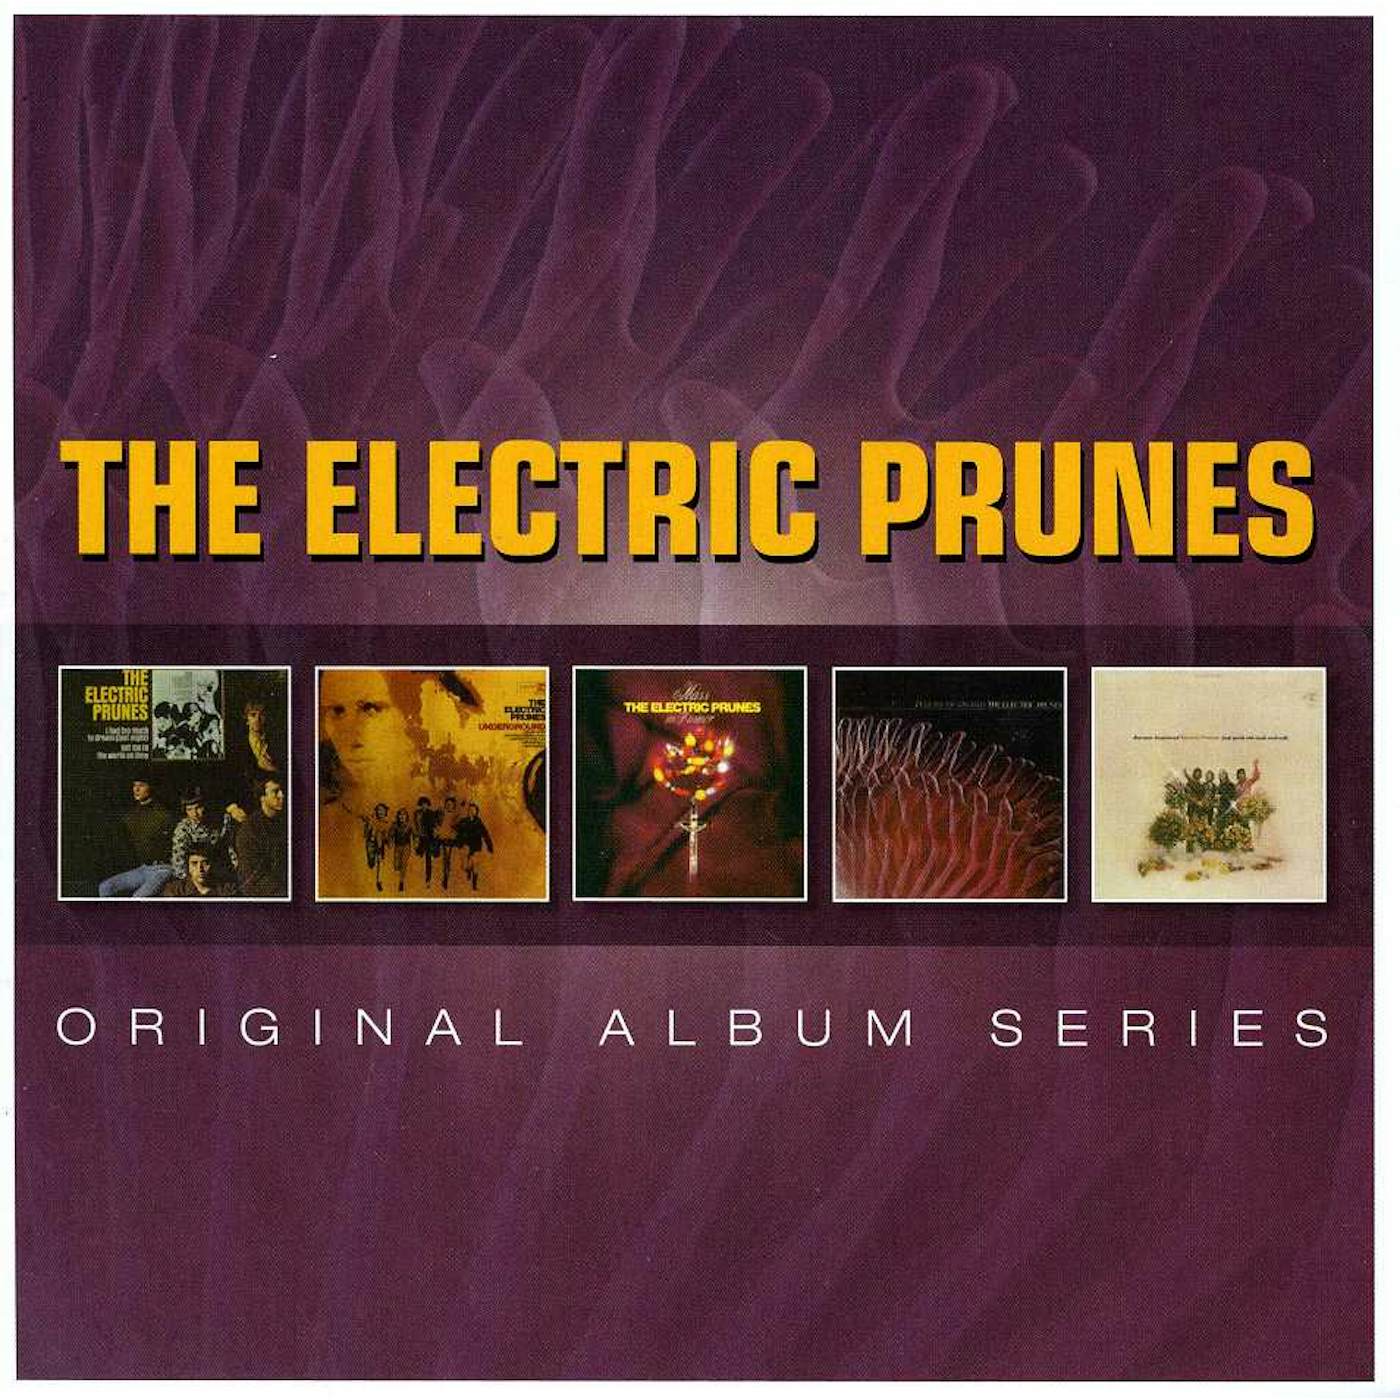 The Electric Prunes ORIGINAL ALBUM SERIES CD